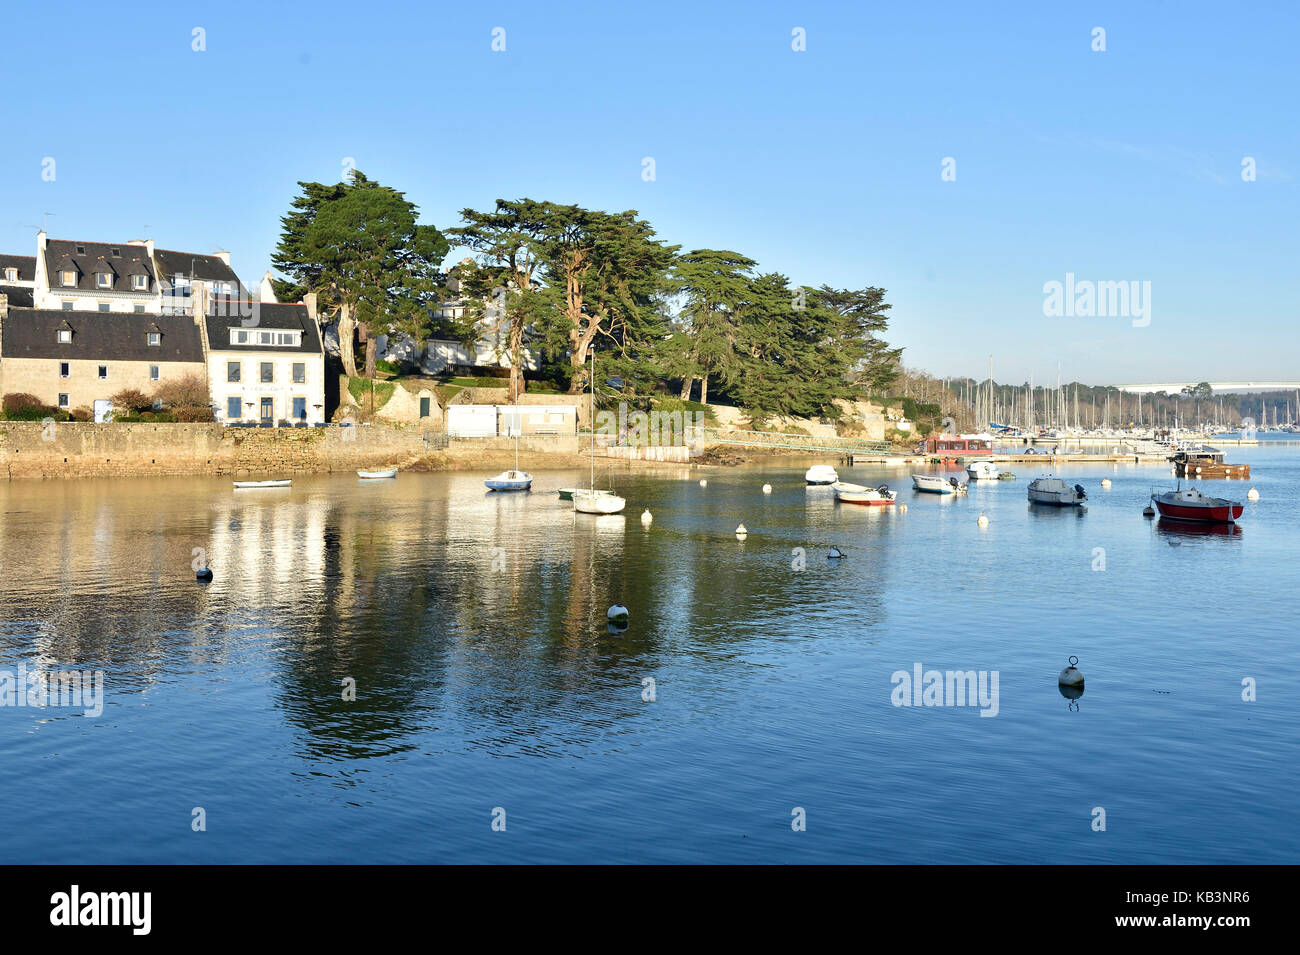 Francia, Finisterre, combrit sainte, pequeño puerto marina a lo largo del río odet benodet mirando en la orilla Foto de stock